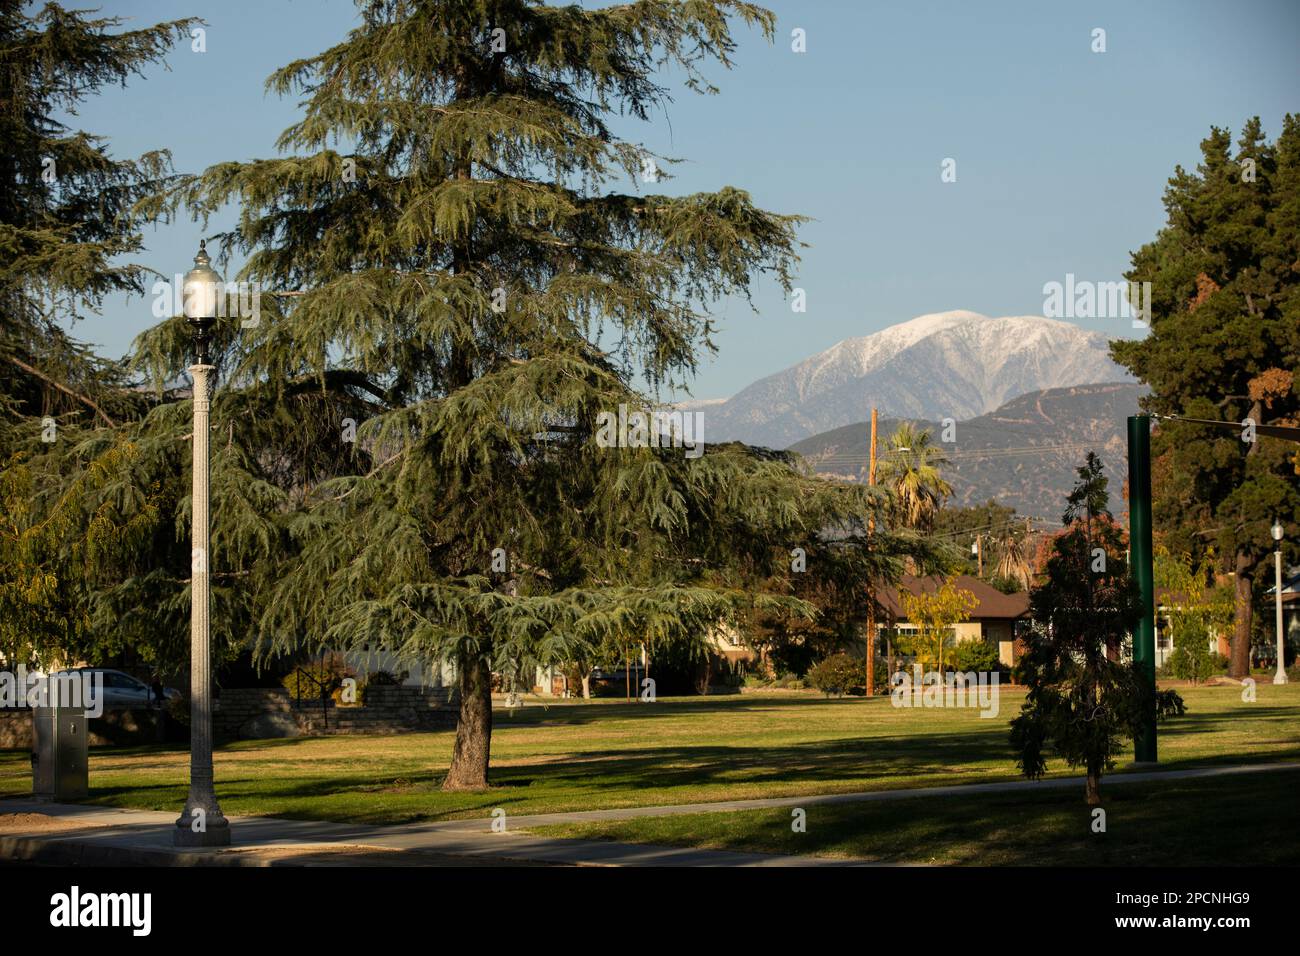 Der Evergreen Park bietet einen umrahmten Blick auf die San Gabriel Mountains aus San Dimas, Kalifornien, USA. Stockfoto